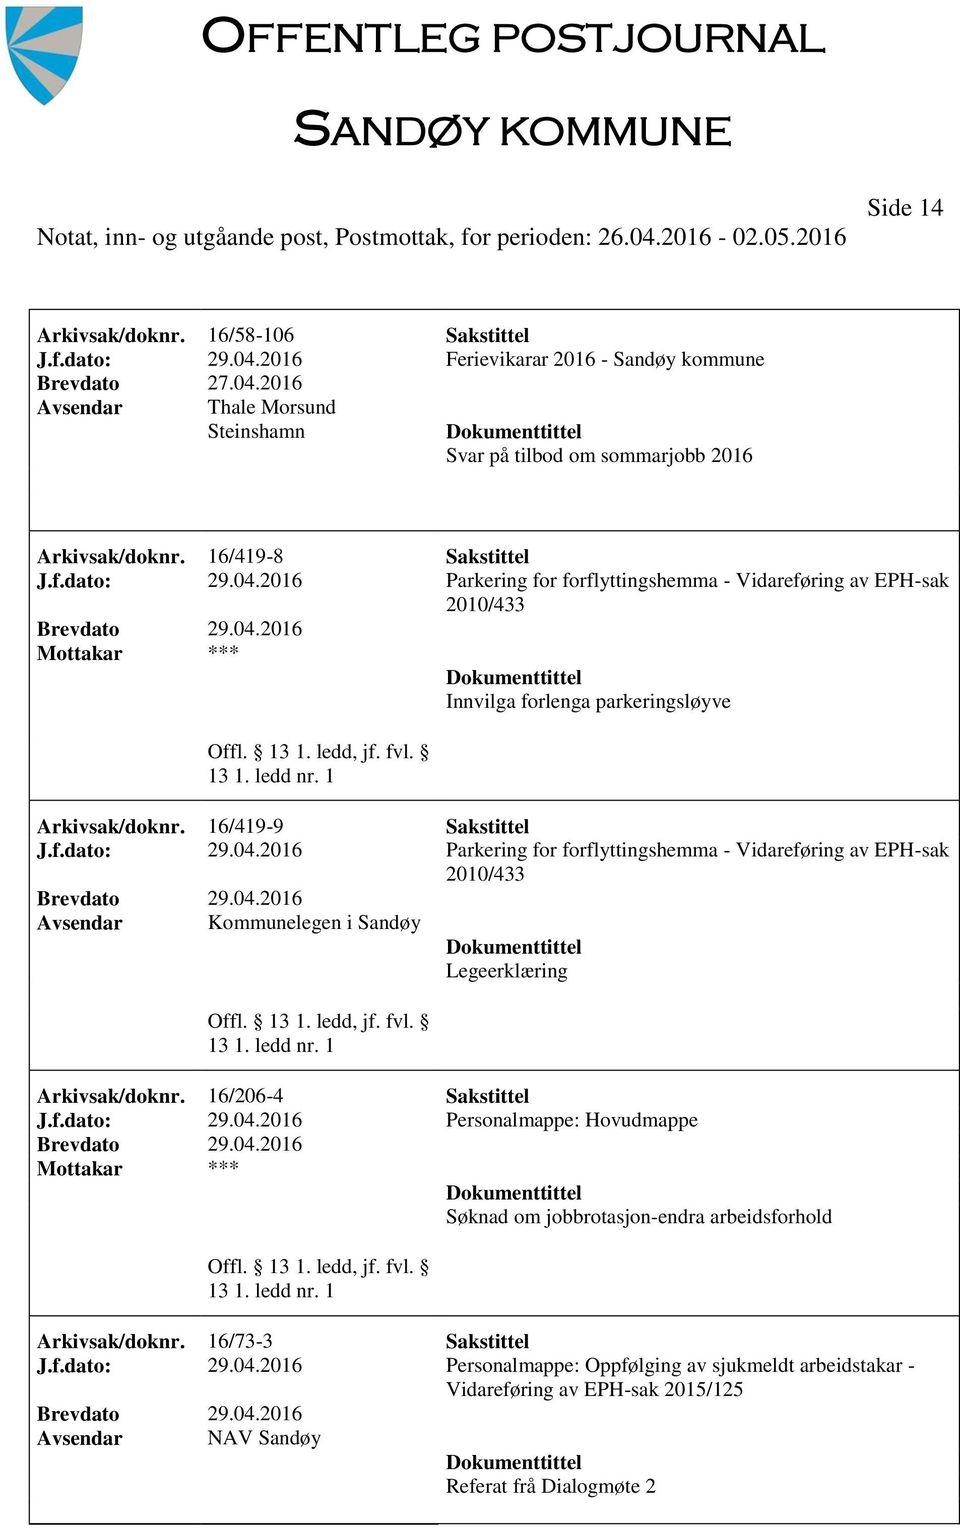 16/73-3 Sakstittel J.f.dato: 29.04.2016 Personalmappe: Oppfølging av sjukmeldt arbeidstakar - Vidareføring av EPH-sak 2015/125 NAV Sandøy Referat frå Dialogmøte 2